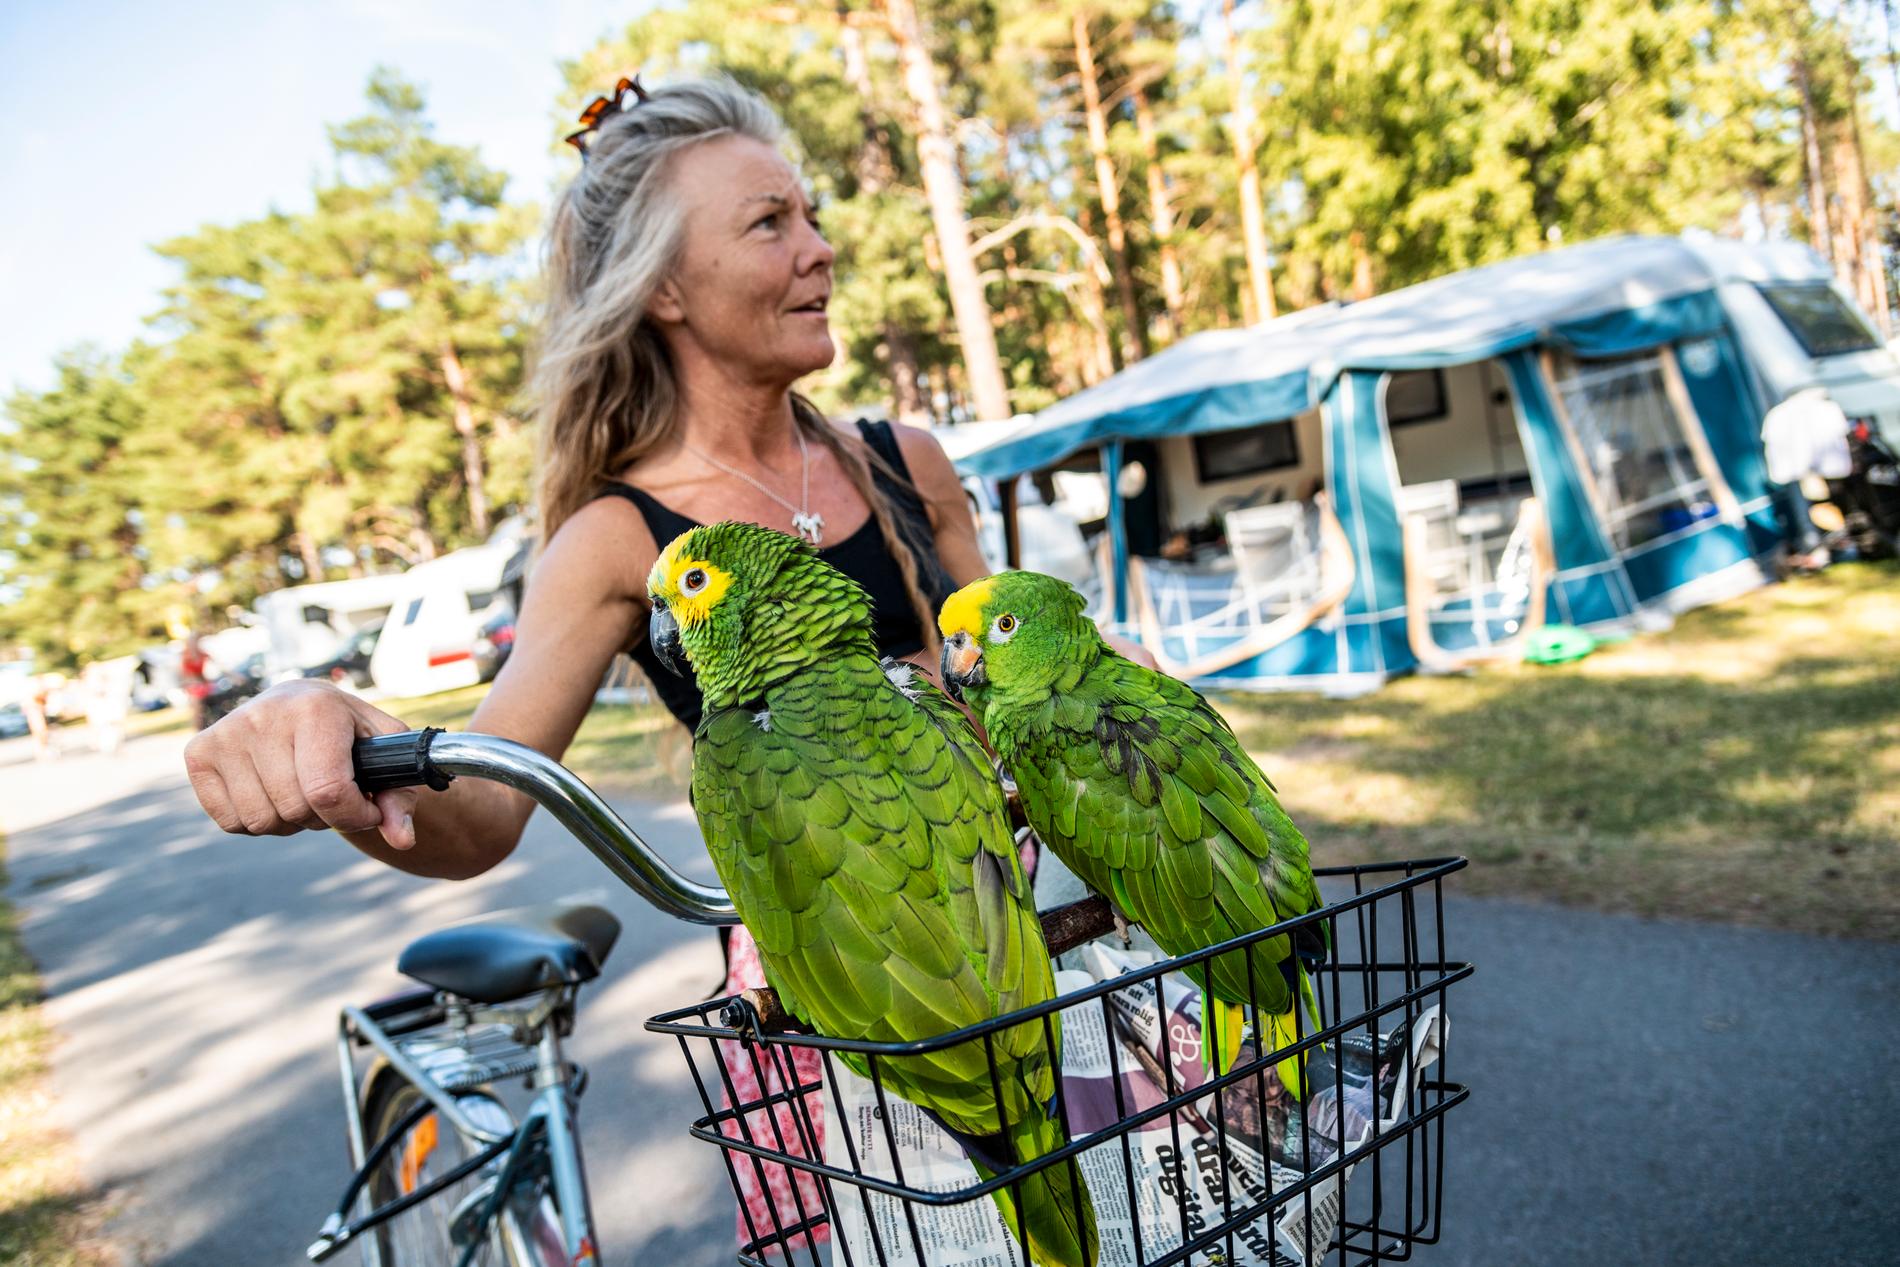 ”Att campa med fåglarna är fantastiskt”, säger Karin Blixt, 51, från Blötskog.